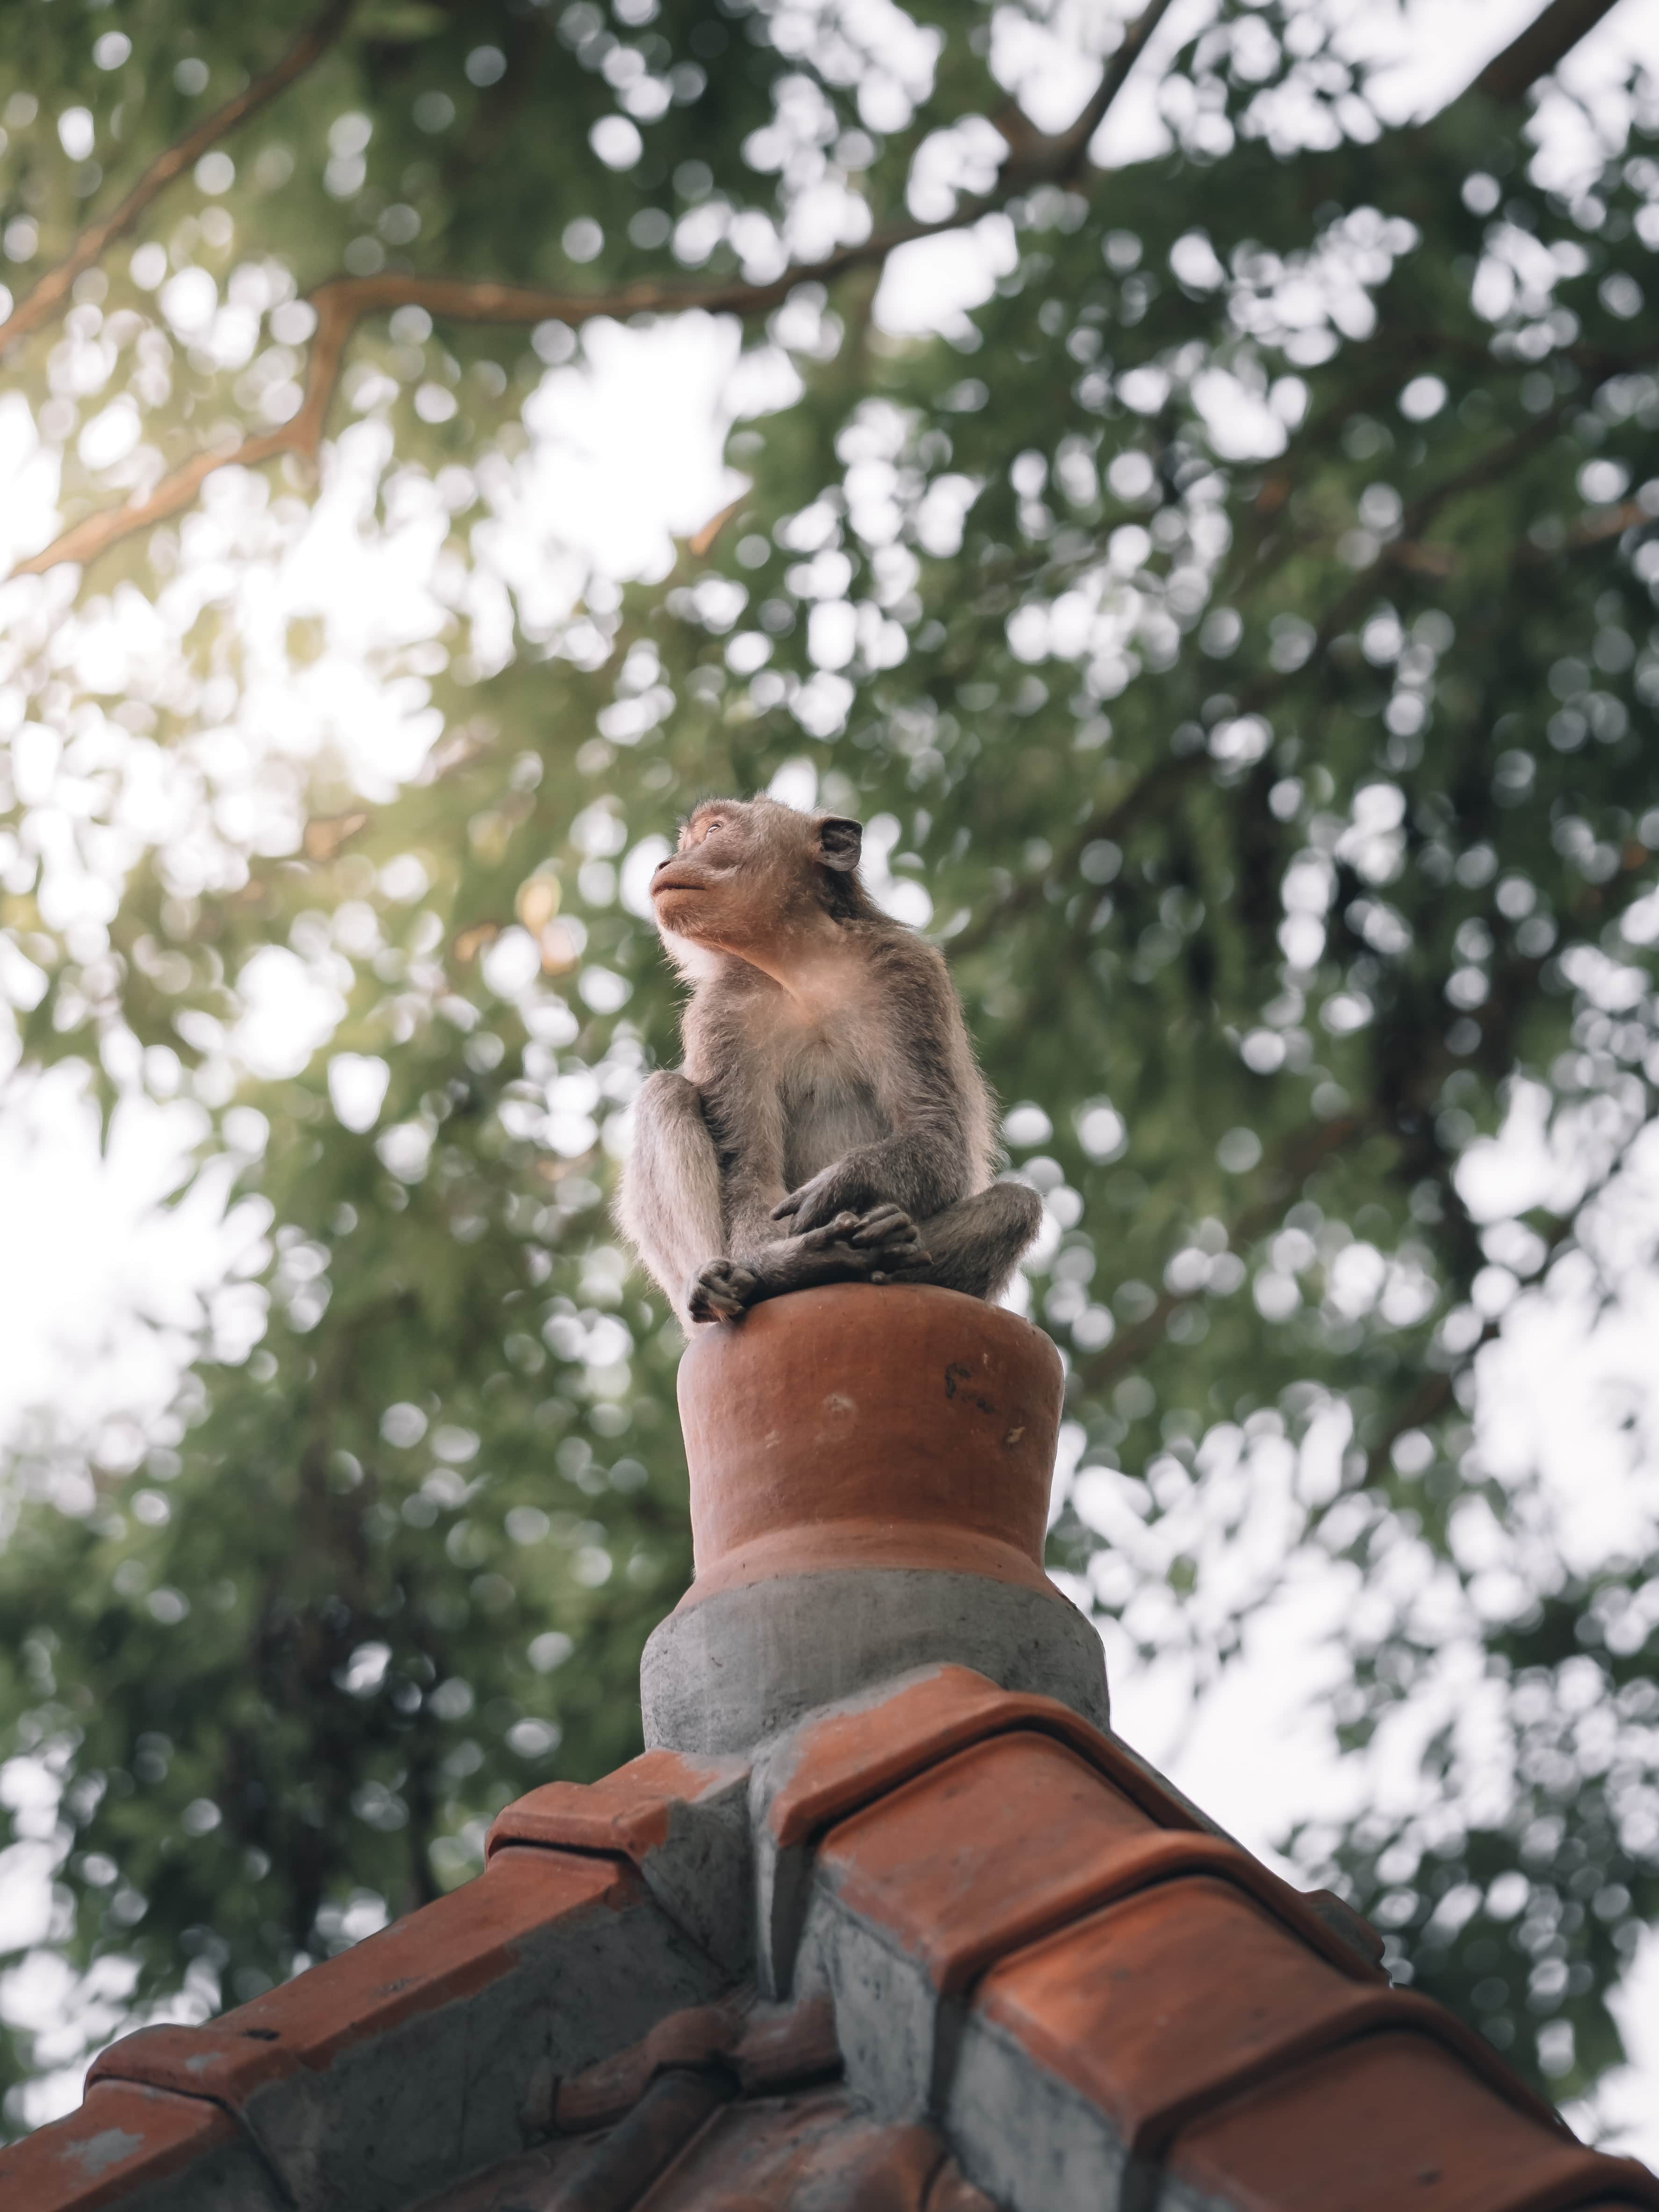 Ubud monkey perched